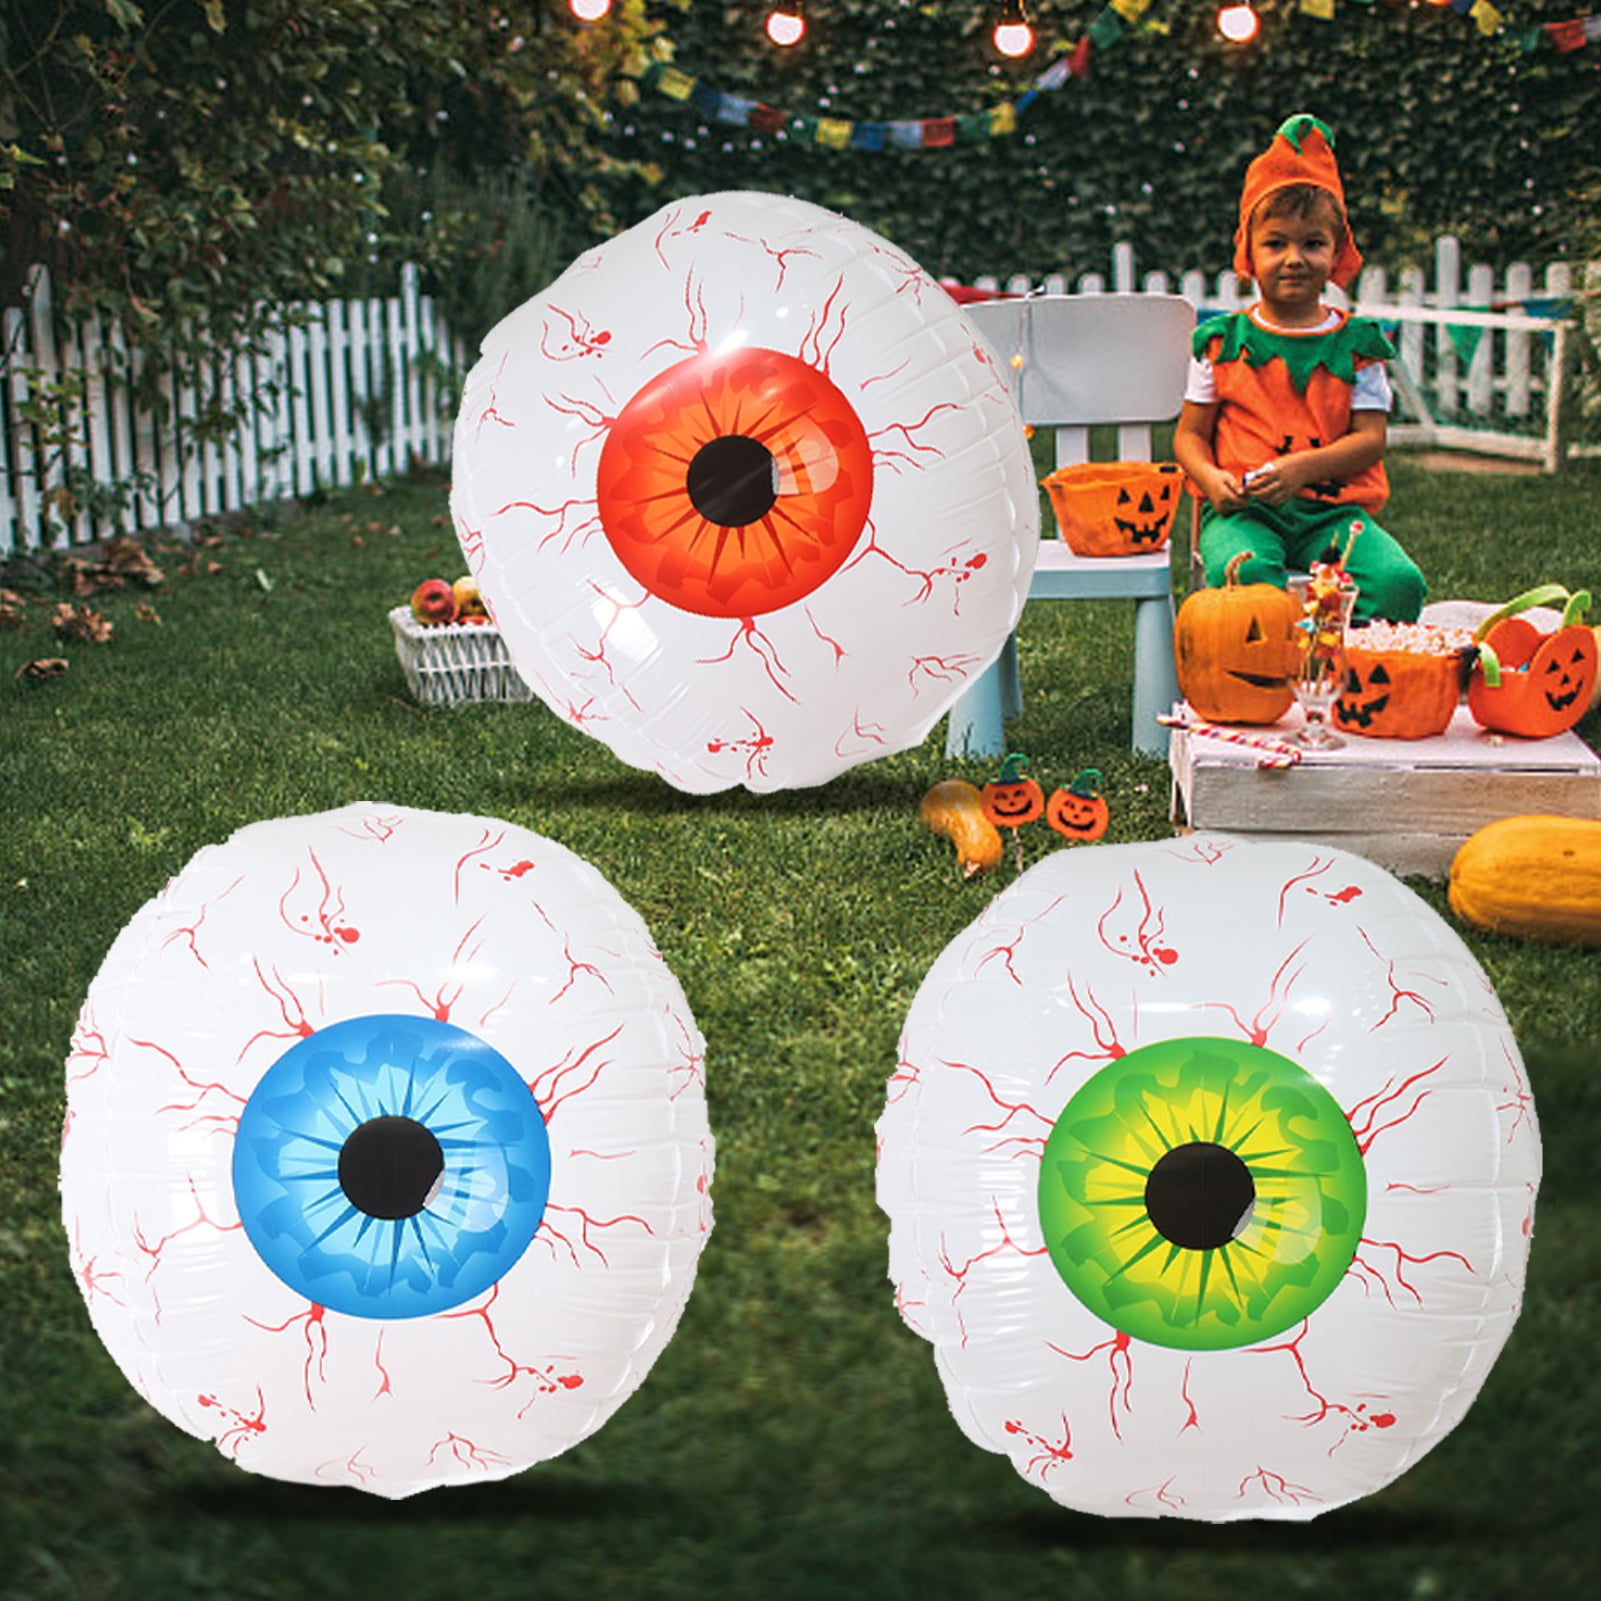 DIY Easy Realistic Eyeballs for Halloween - A Crafty Mix